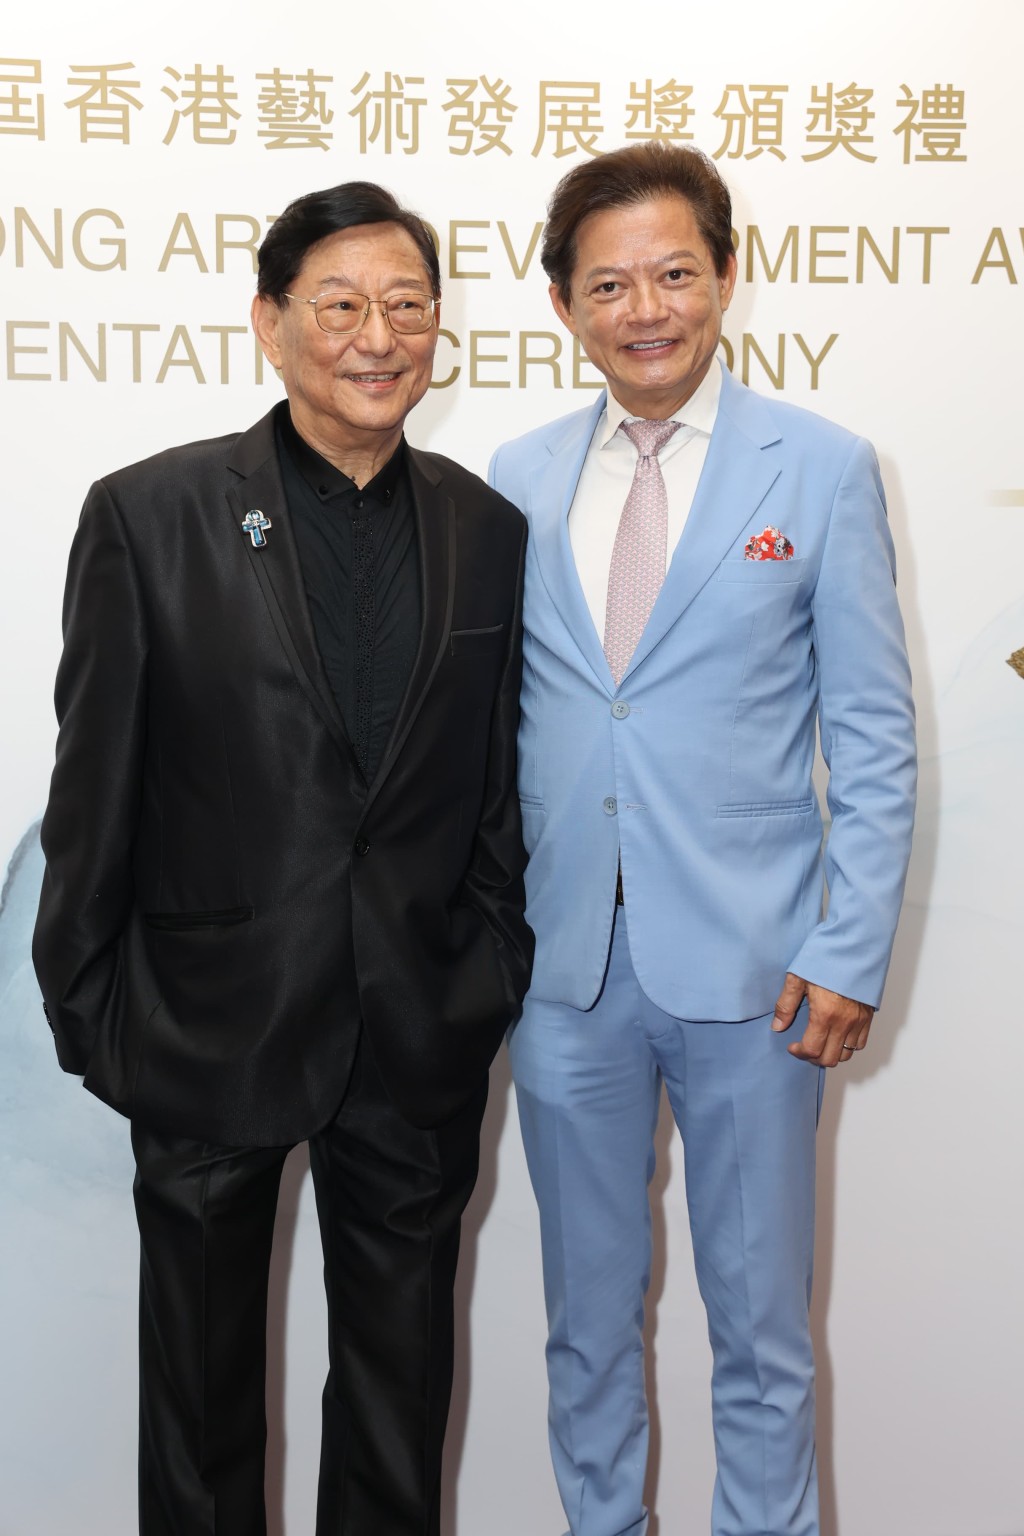 著名男高音歌唱家莫华伦、资深电影人吴思远同获「杰出艺术贡献奖」。